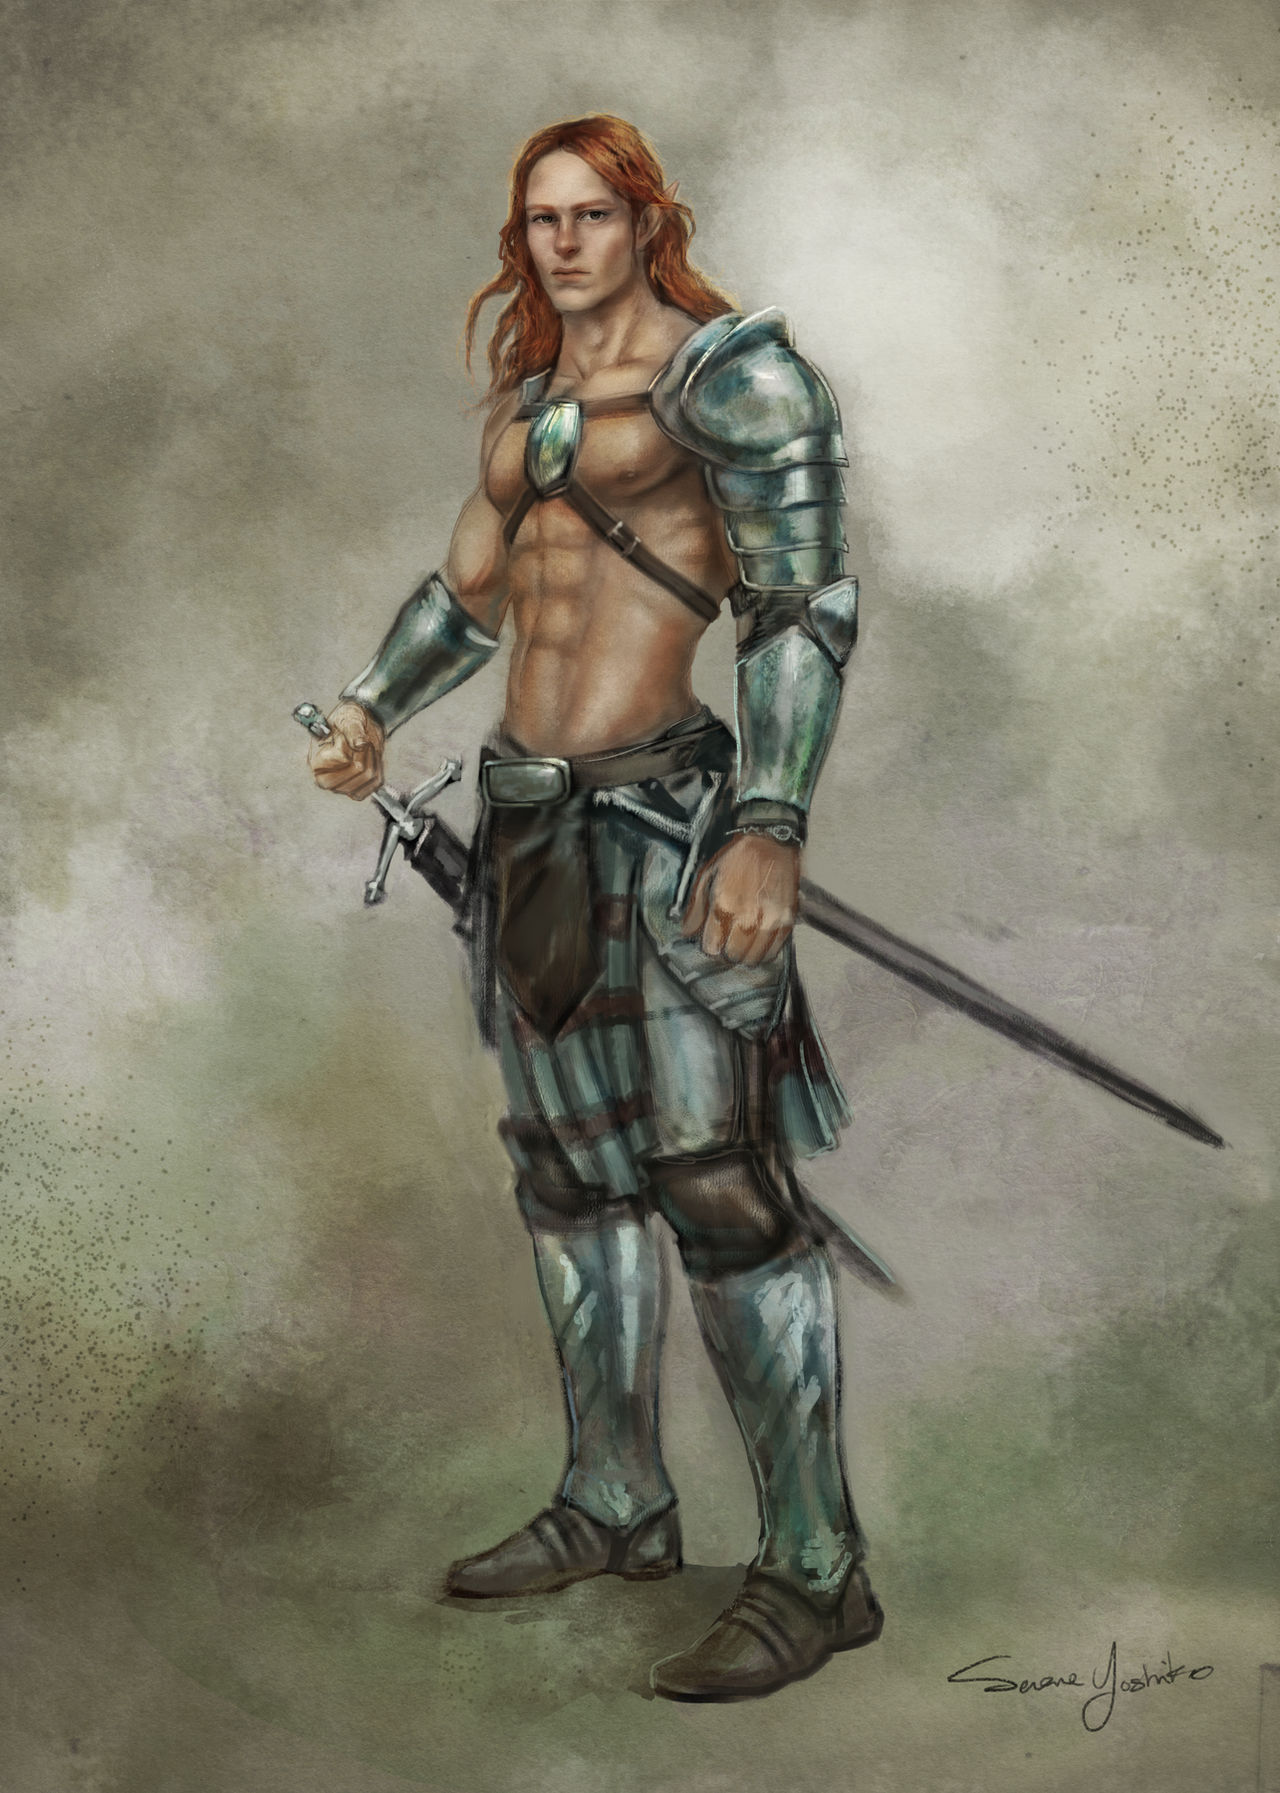 Celtic Warrior by AranzazuFernandez on DeviantArt